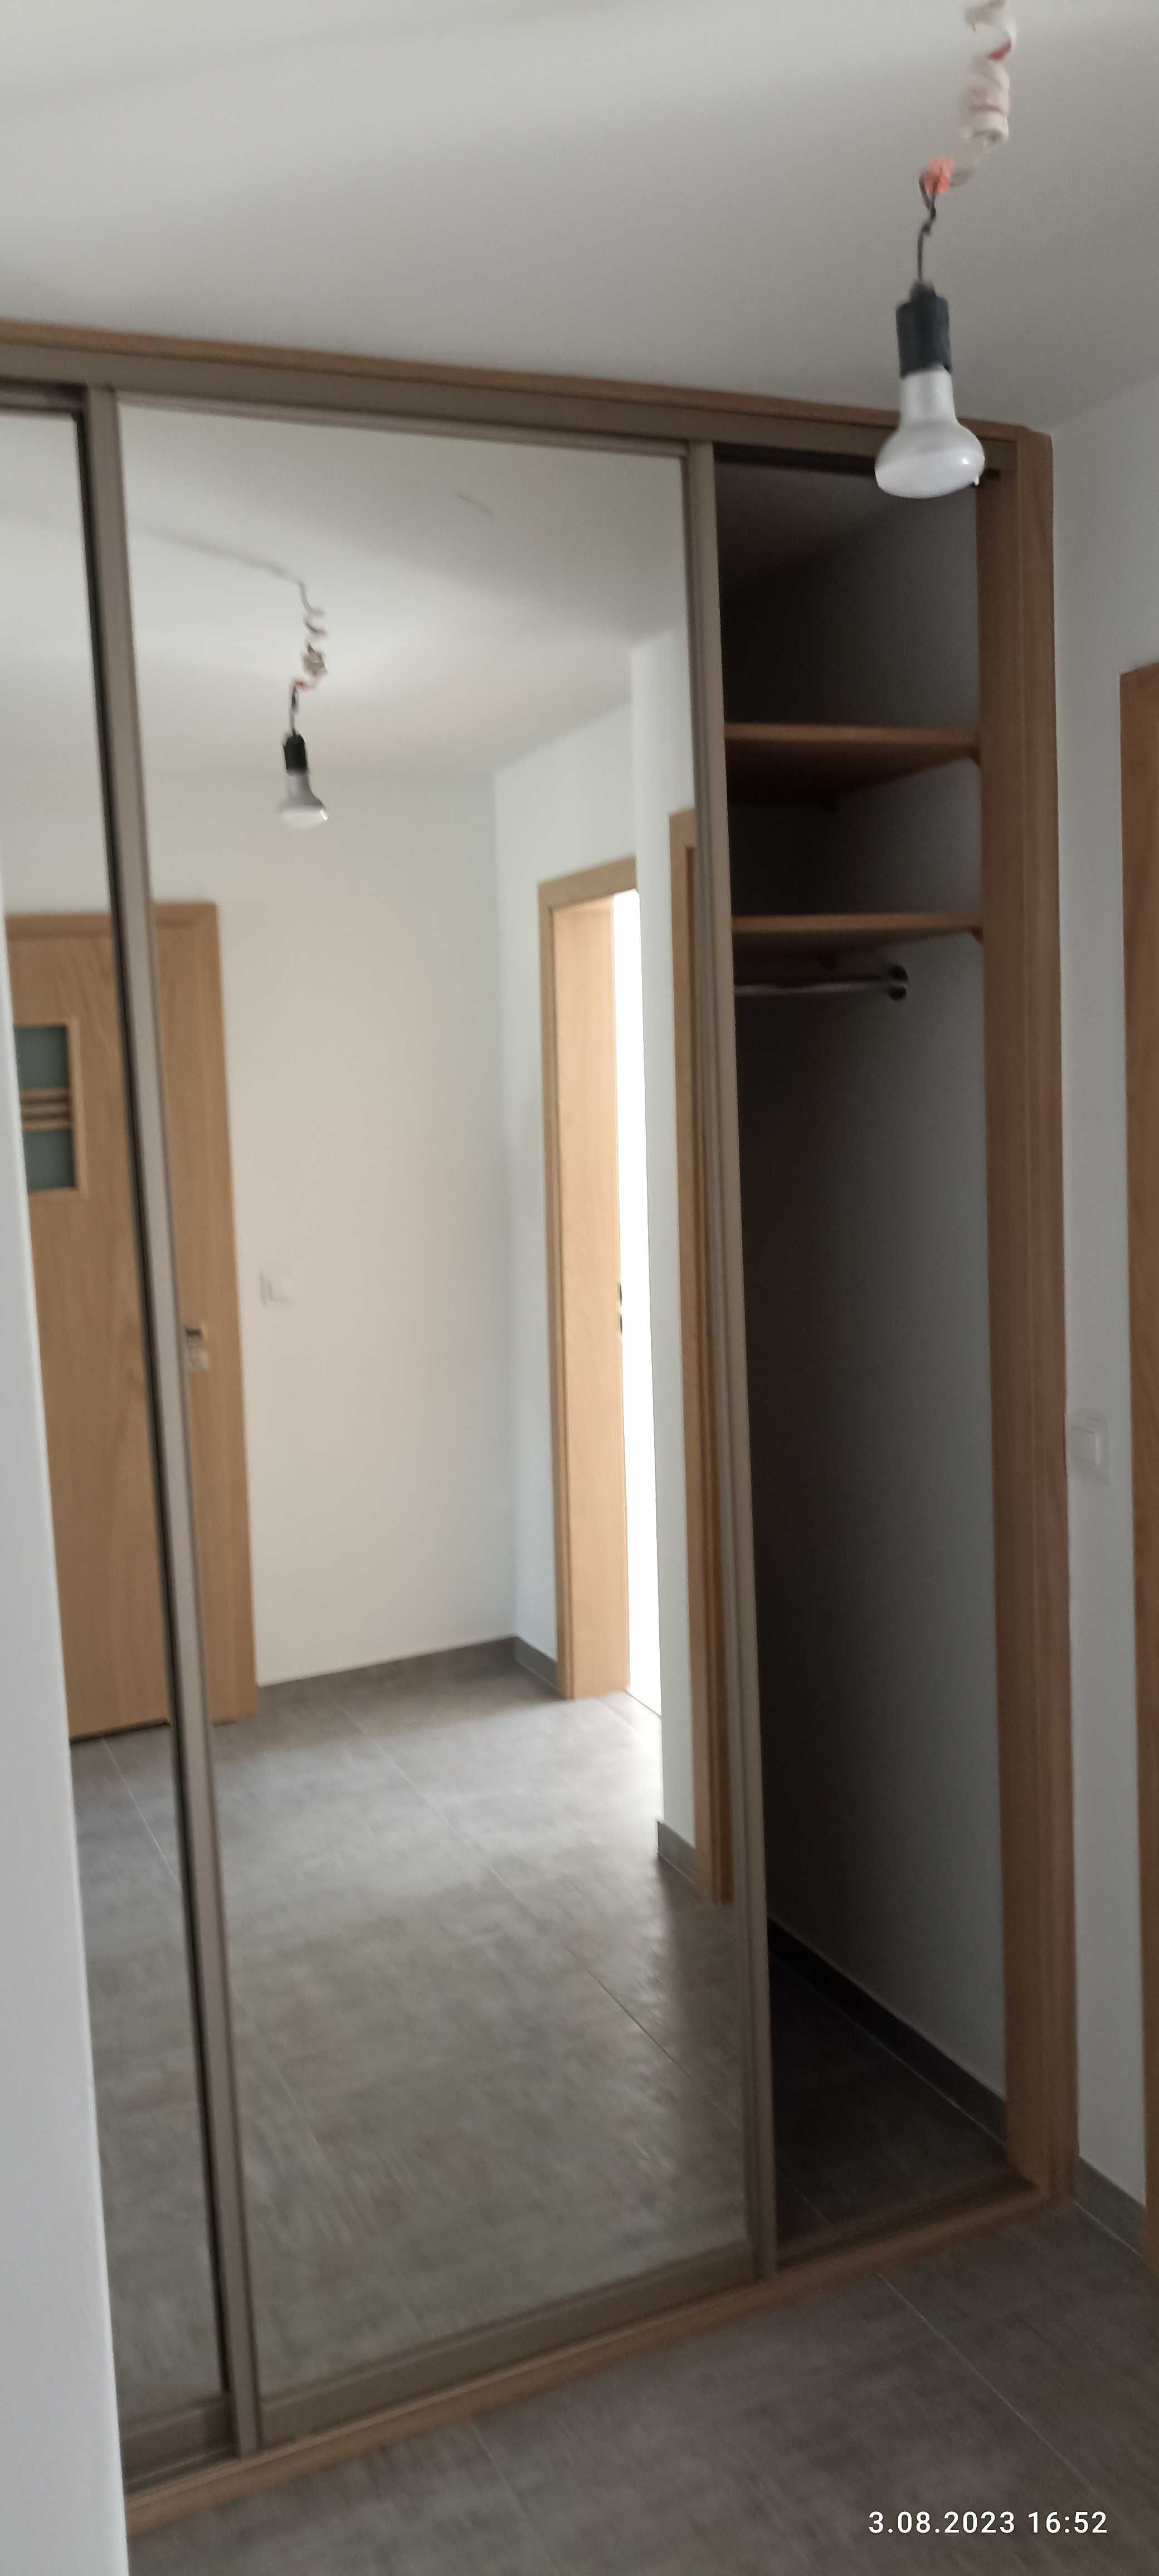 3 pokojowe mieszkanie do wynajęcia w Opolu Czarnowąsach